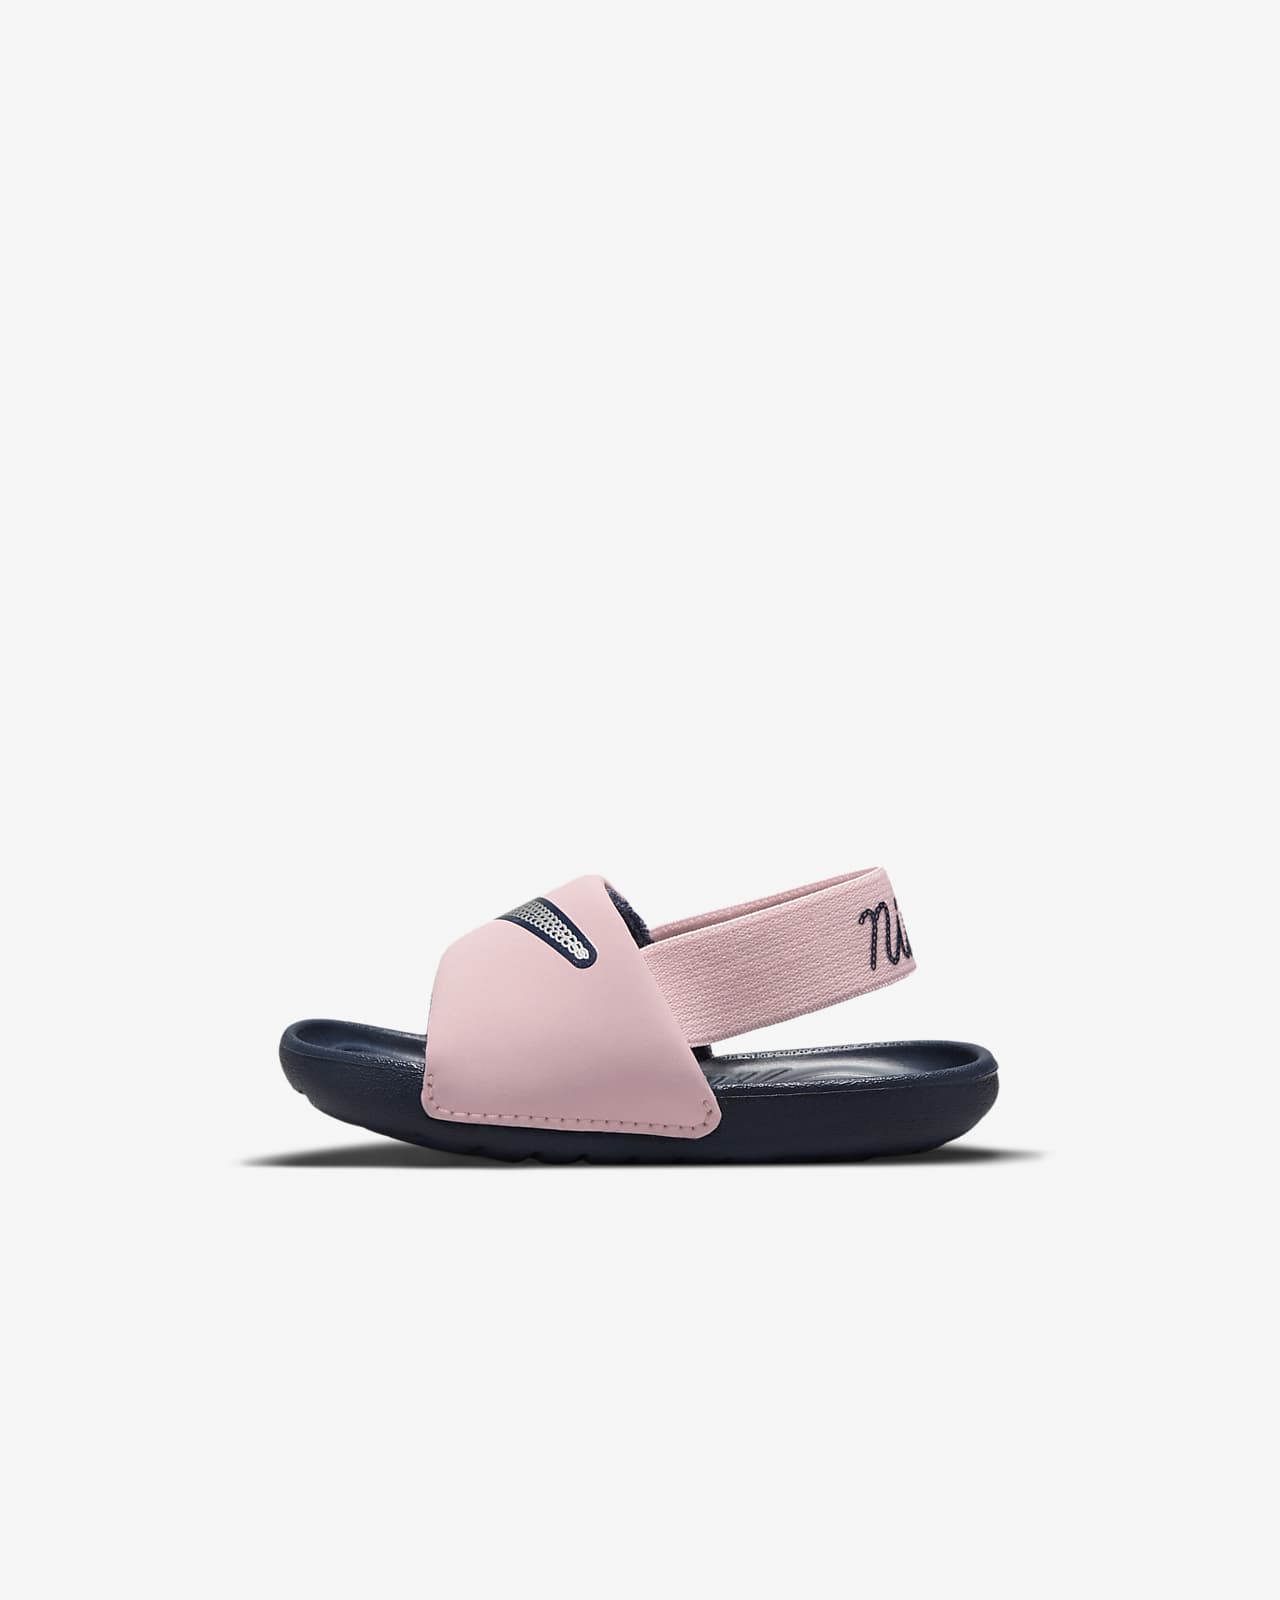 Nike Kawa SE Baby & Toddler Slide